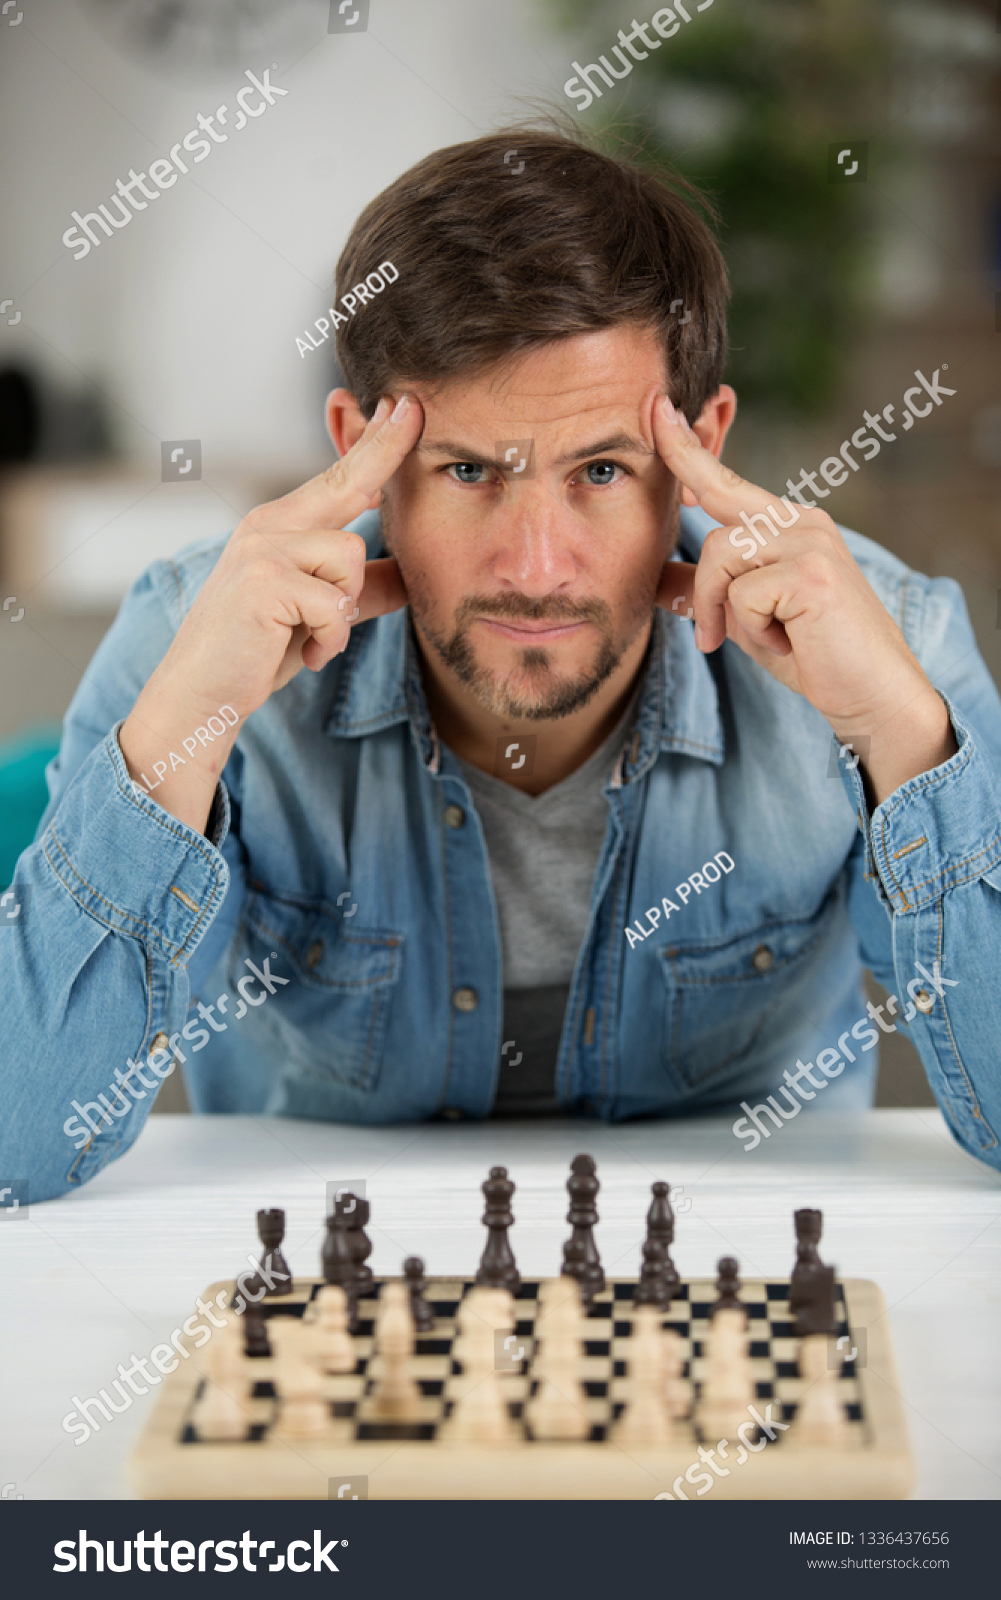 man unsure about chess match #1336437656